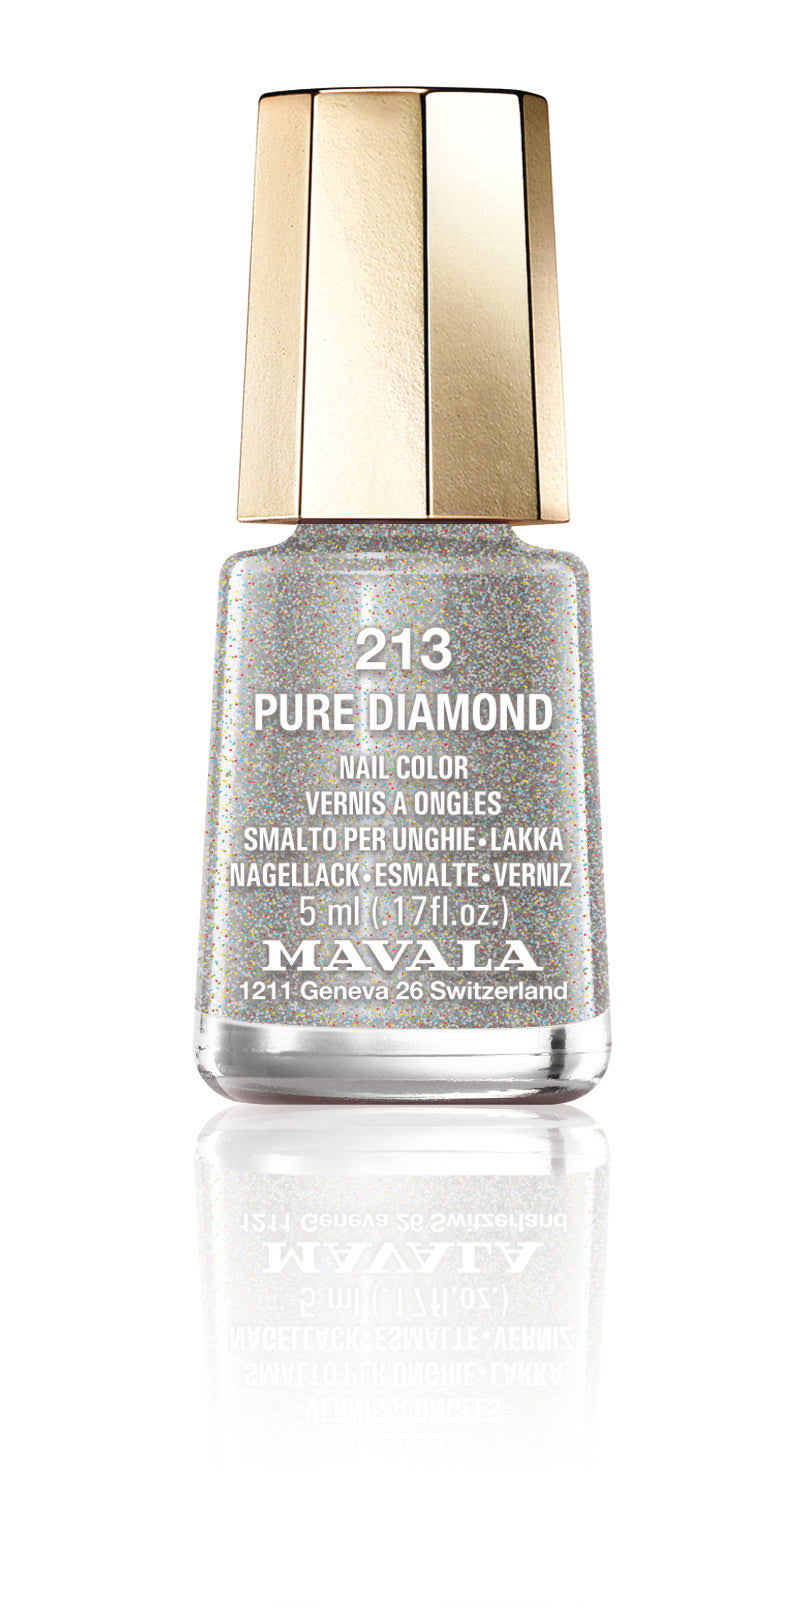 Mavala Mini Color Nail Polish 213 Pure Diamond 5ml